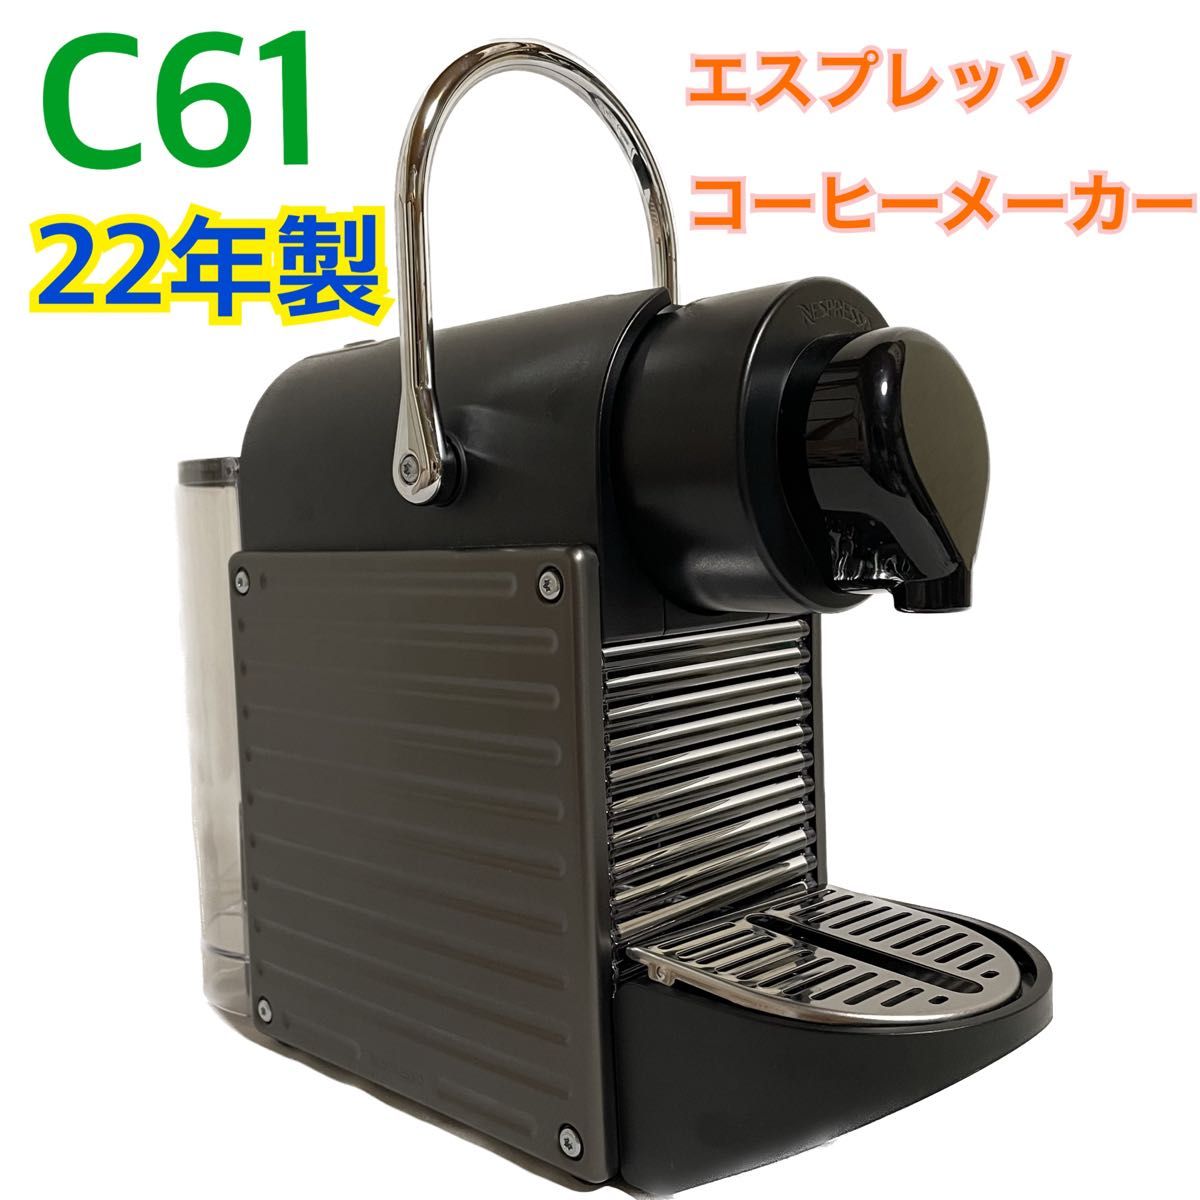 NESPRESSO ネスプレッソ ピクシーツーチタン C61 2022年製コーヒーメーカー コーヒーマシン エスプレッソマシン